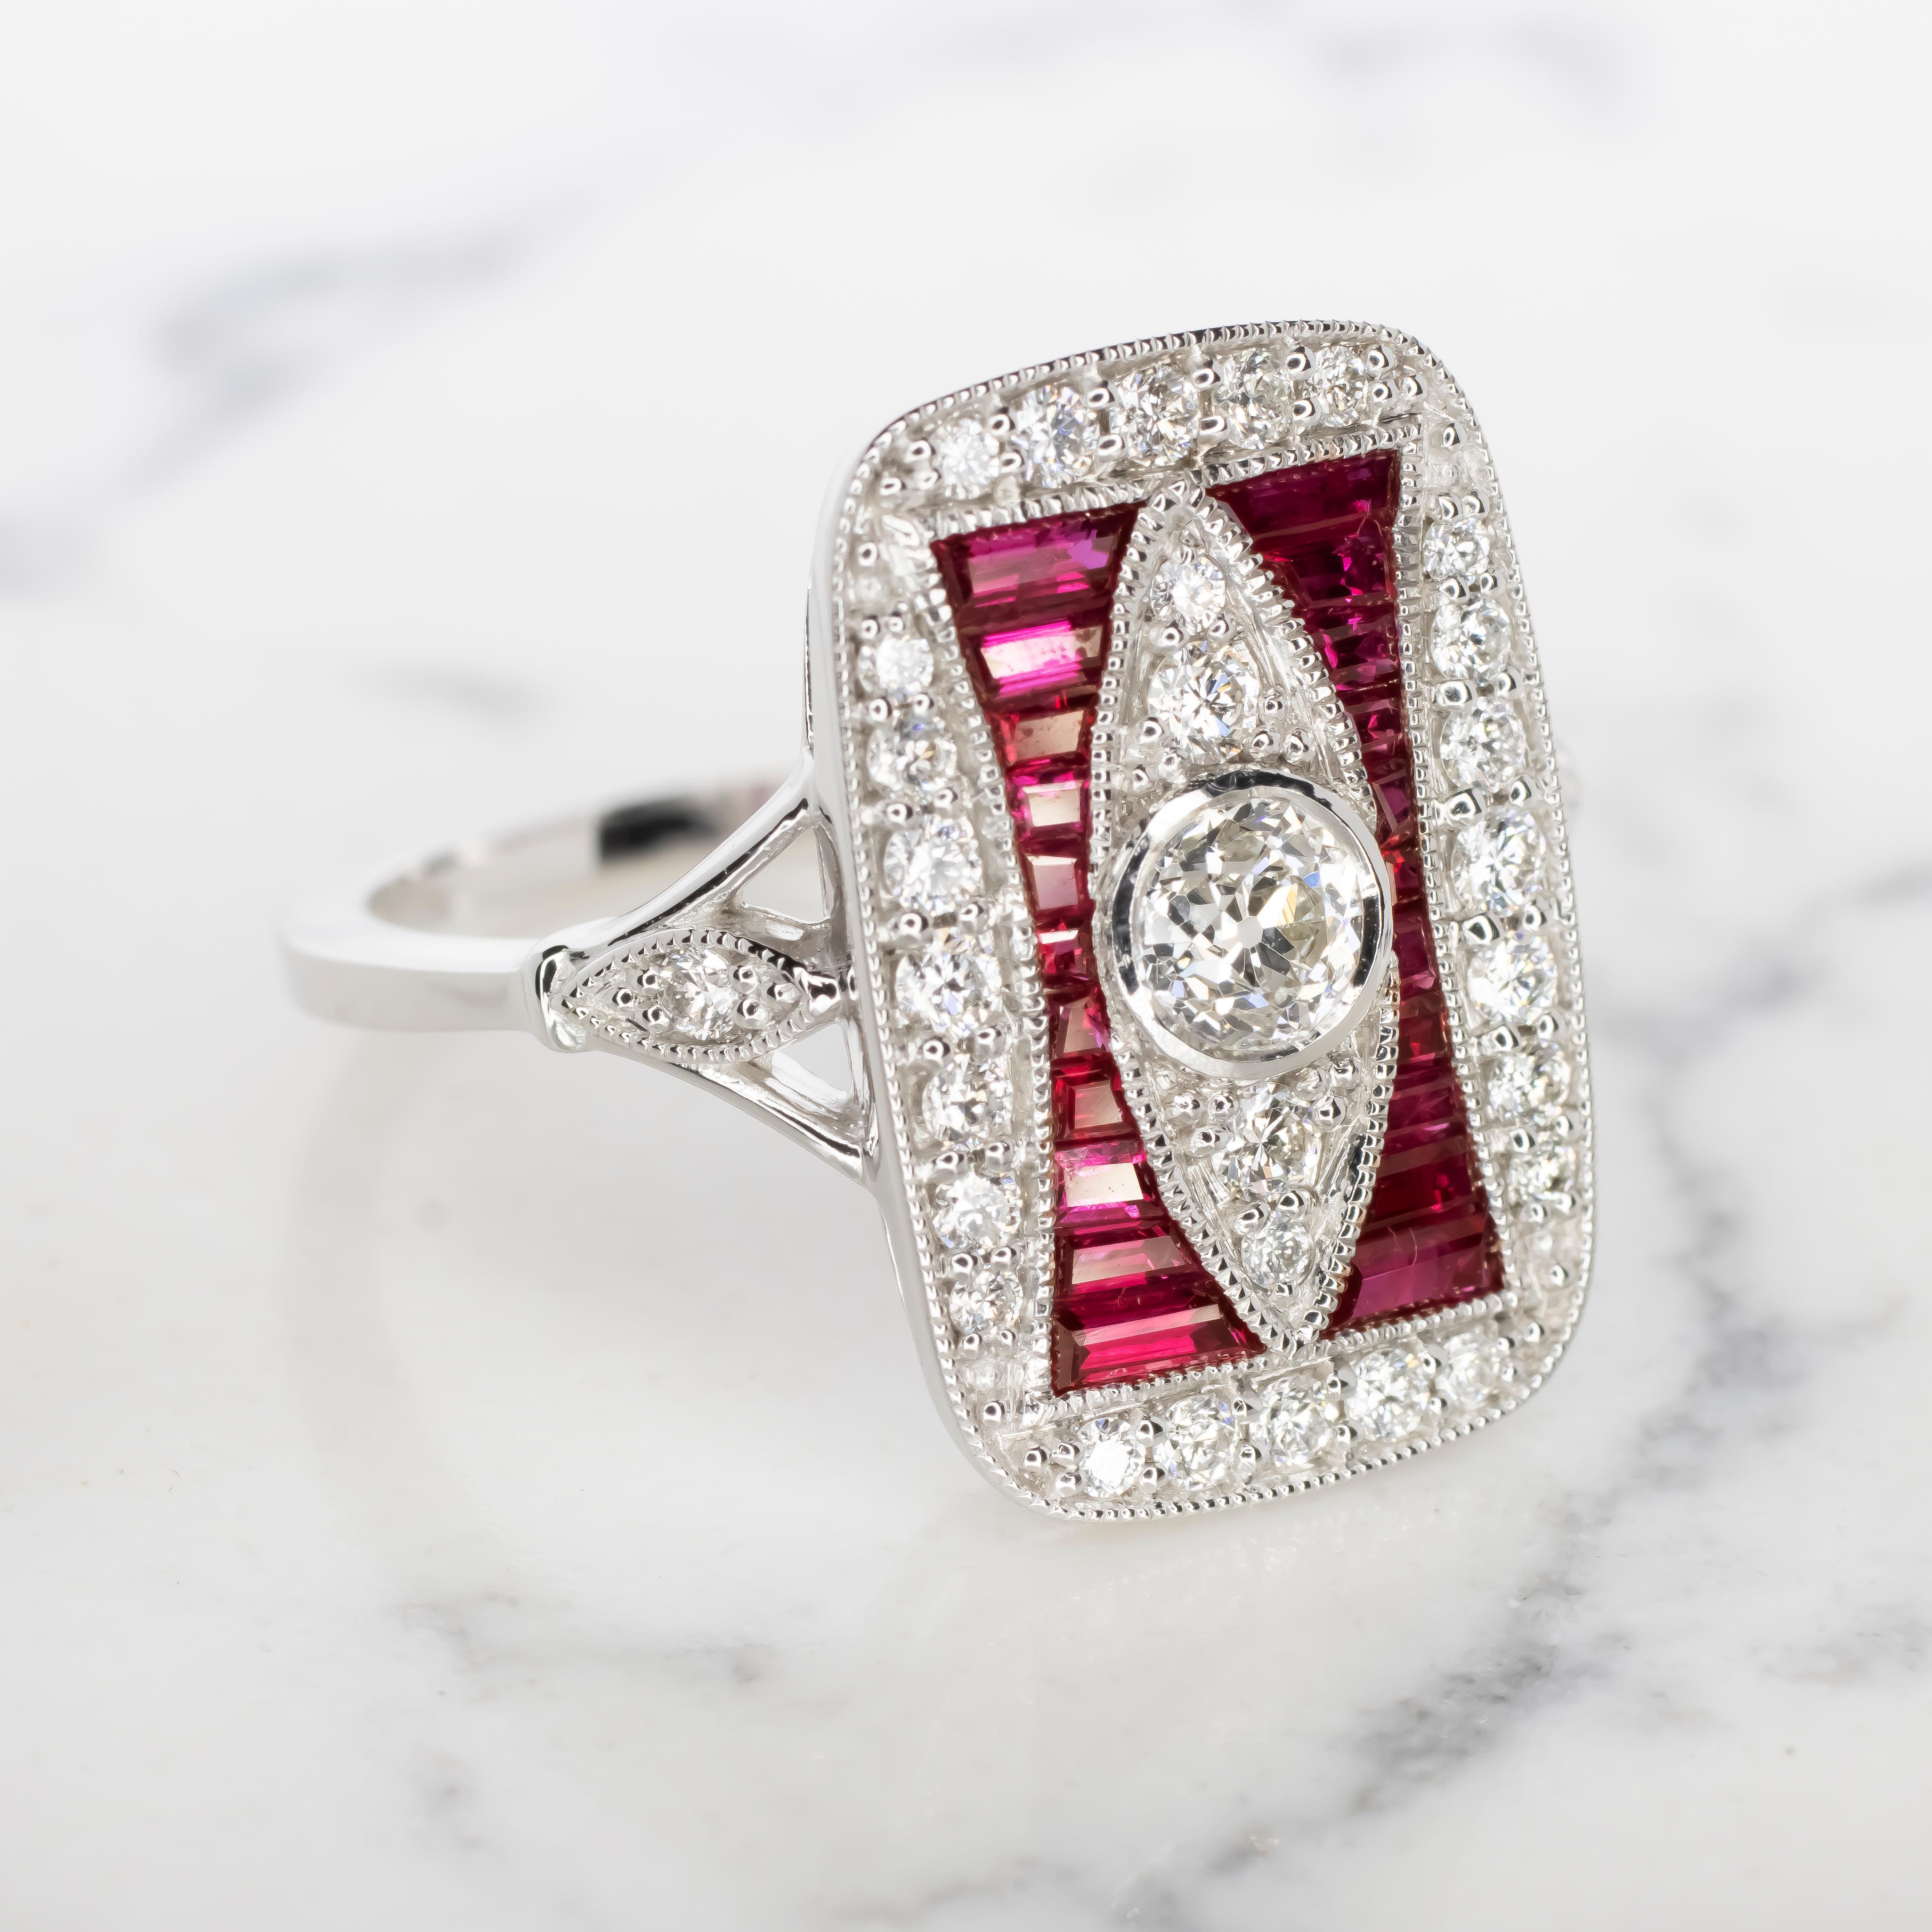 Voici une captivante bague en diamant et rubis, exhalant l'élégance du design Art déco, mettant en valeur des diamants naturels et des rubis dans un arrangement étonnant qui rayonne d'une riche couleur et d'un éclat irrésistible.

Les